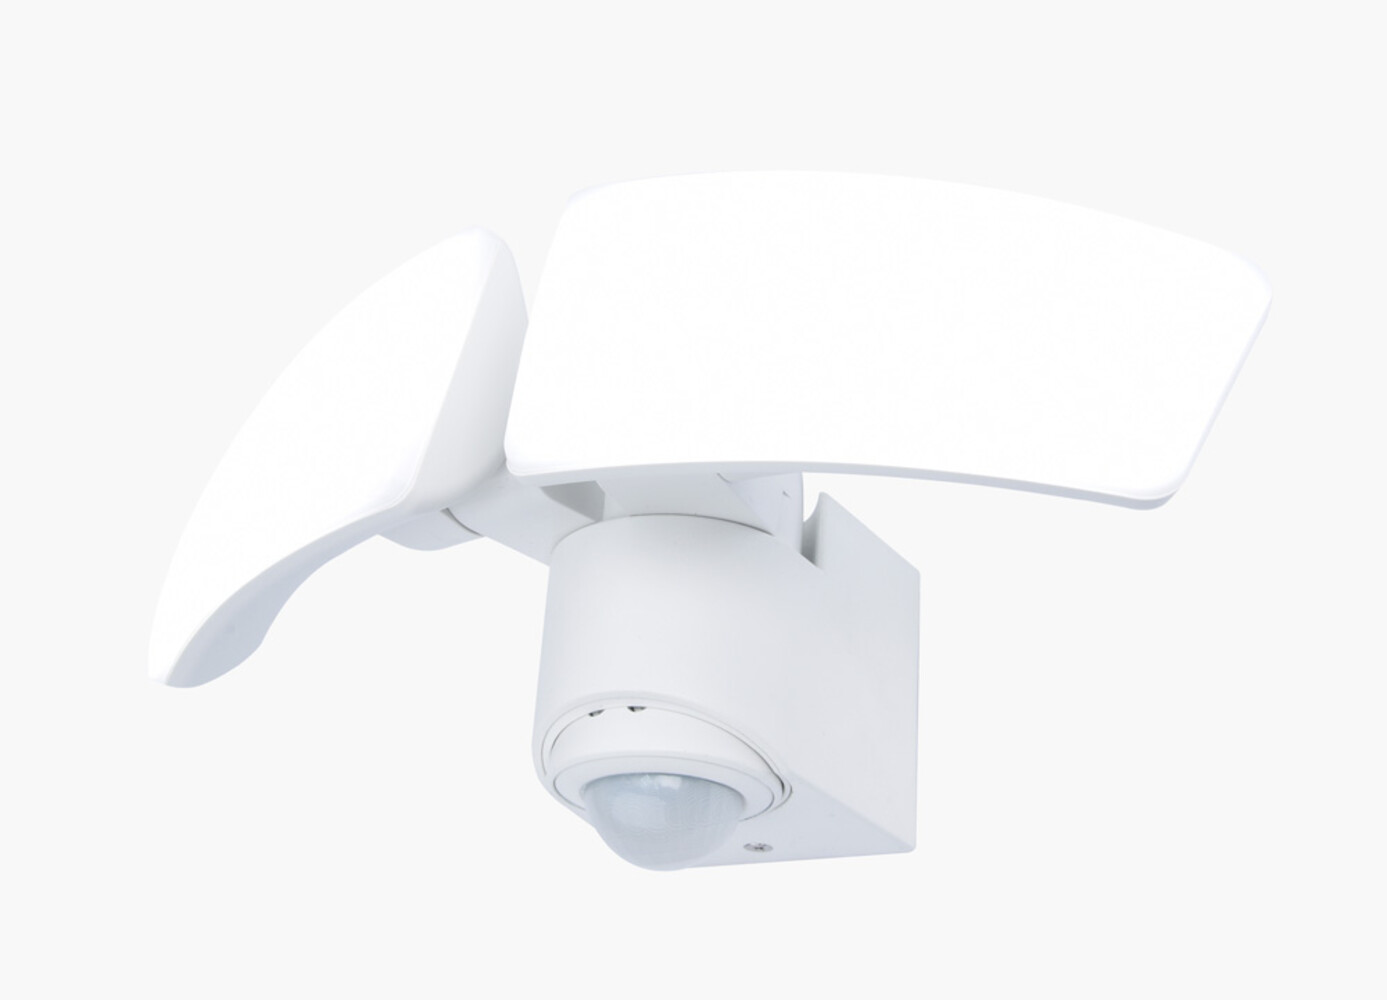 Elegante weiße ECO-LIGHT Aussenwandleuchte ARTICA mit energieeffizienter LED Technologie und integriertem PIR Bewegungssensor